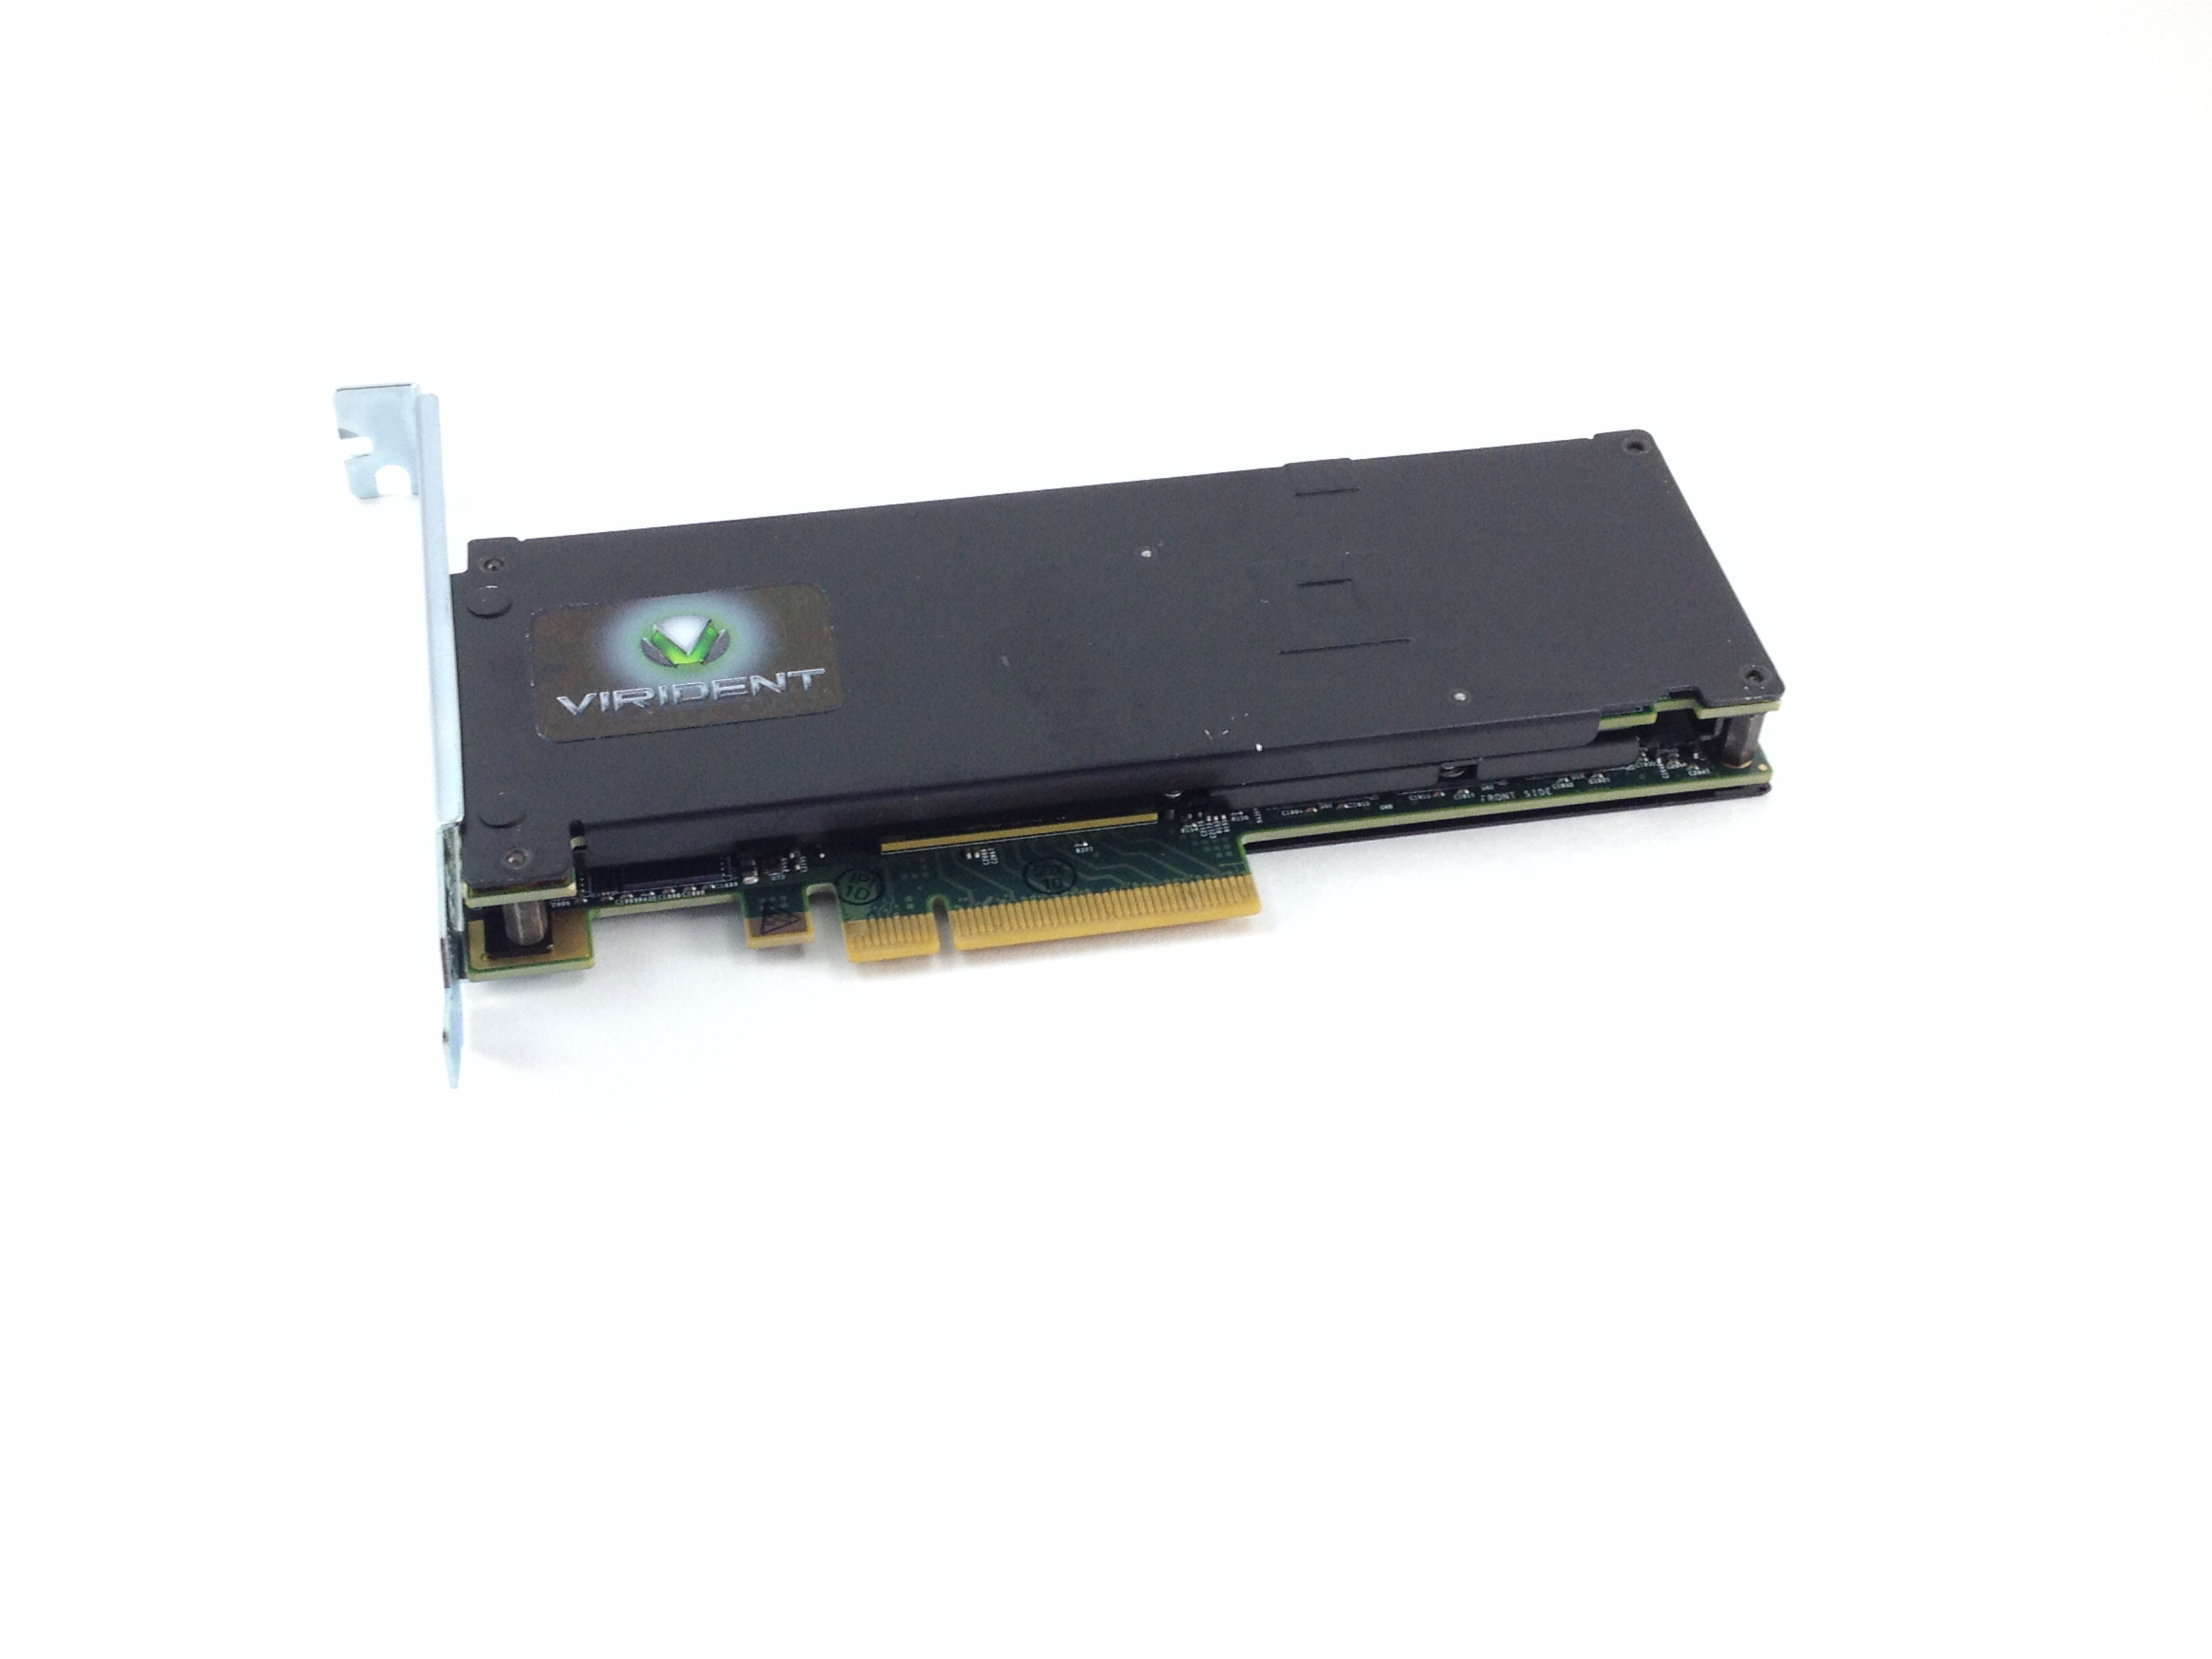 HGST Virident Flashmax II 2.2TB PCI-E Solid State Drive SSD (M2-LP-2200-2B)